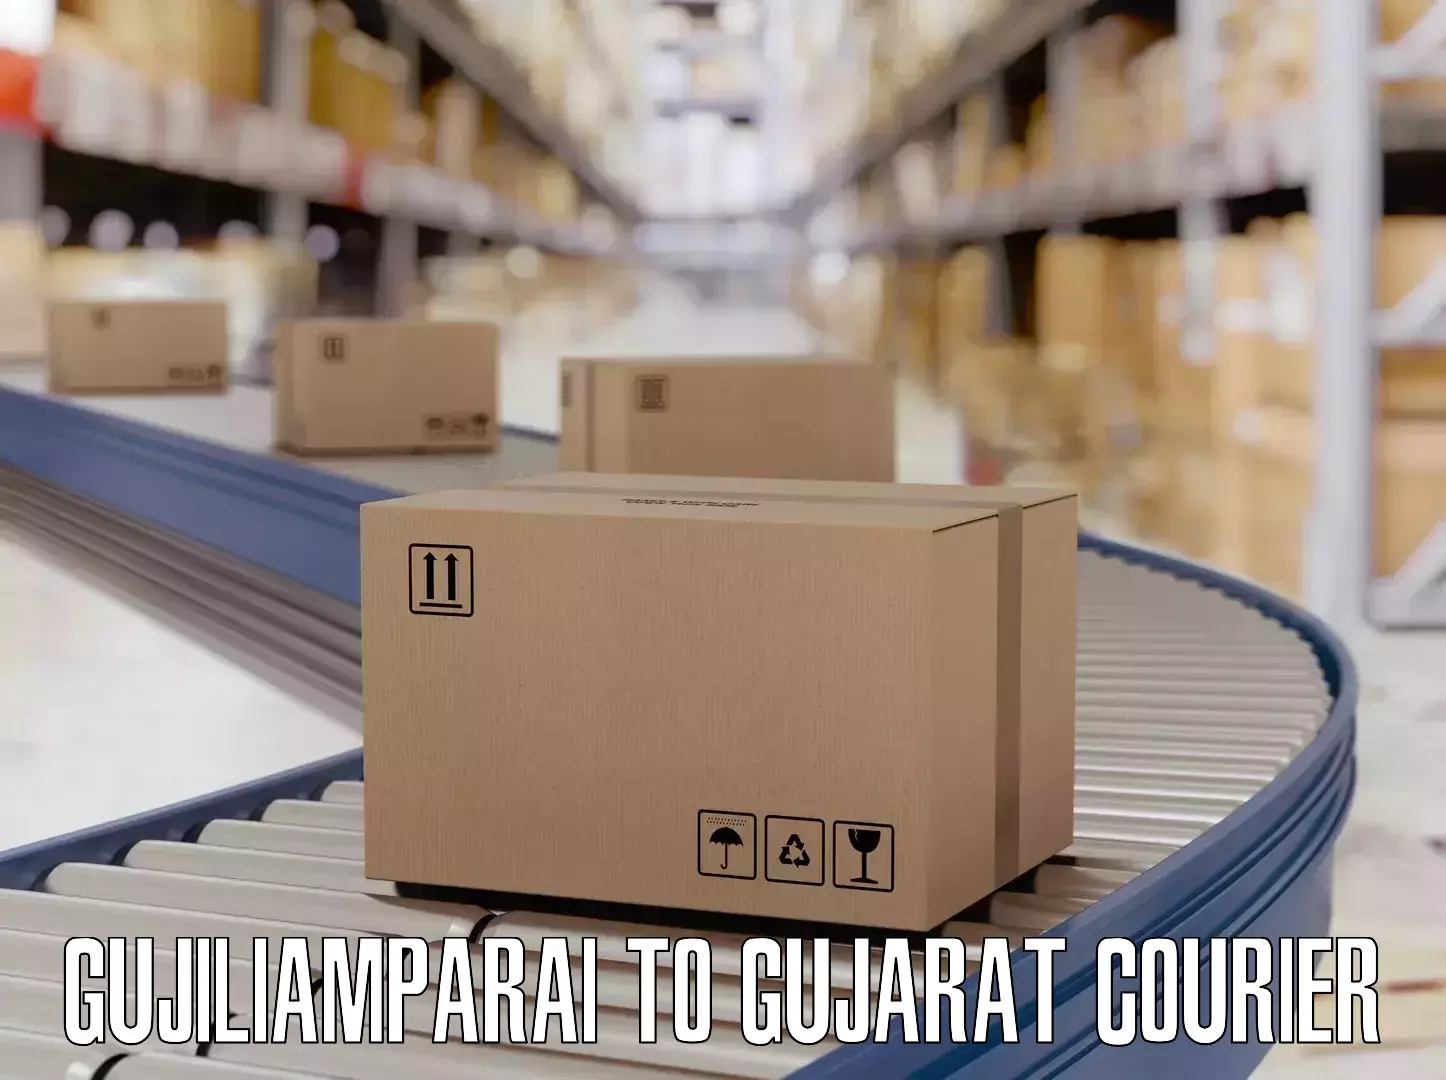 Luggage delivery network Gujiliamparai to Idar